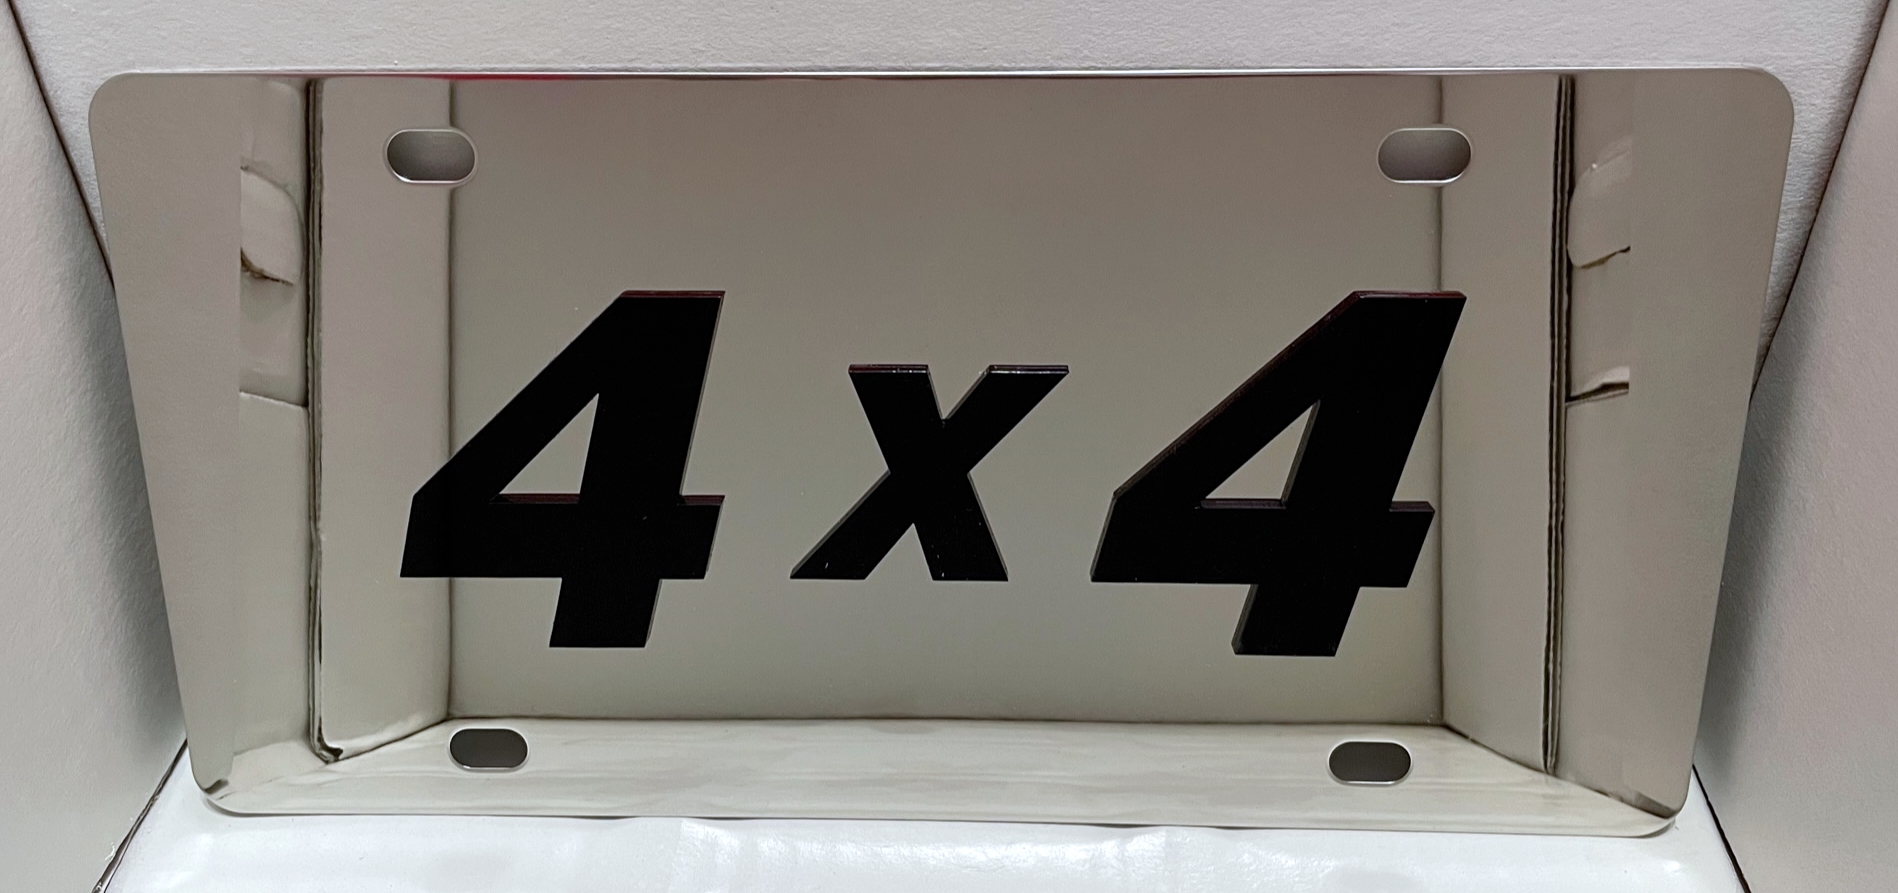 4 X 4 black vanity license plate car tag